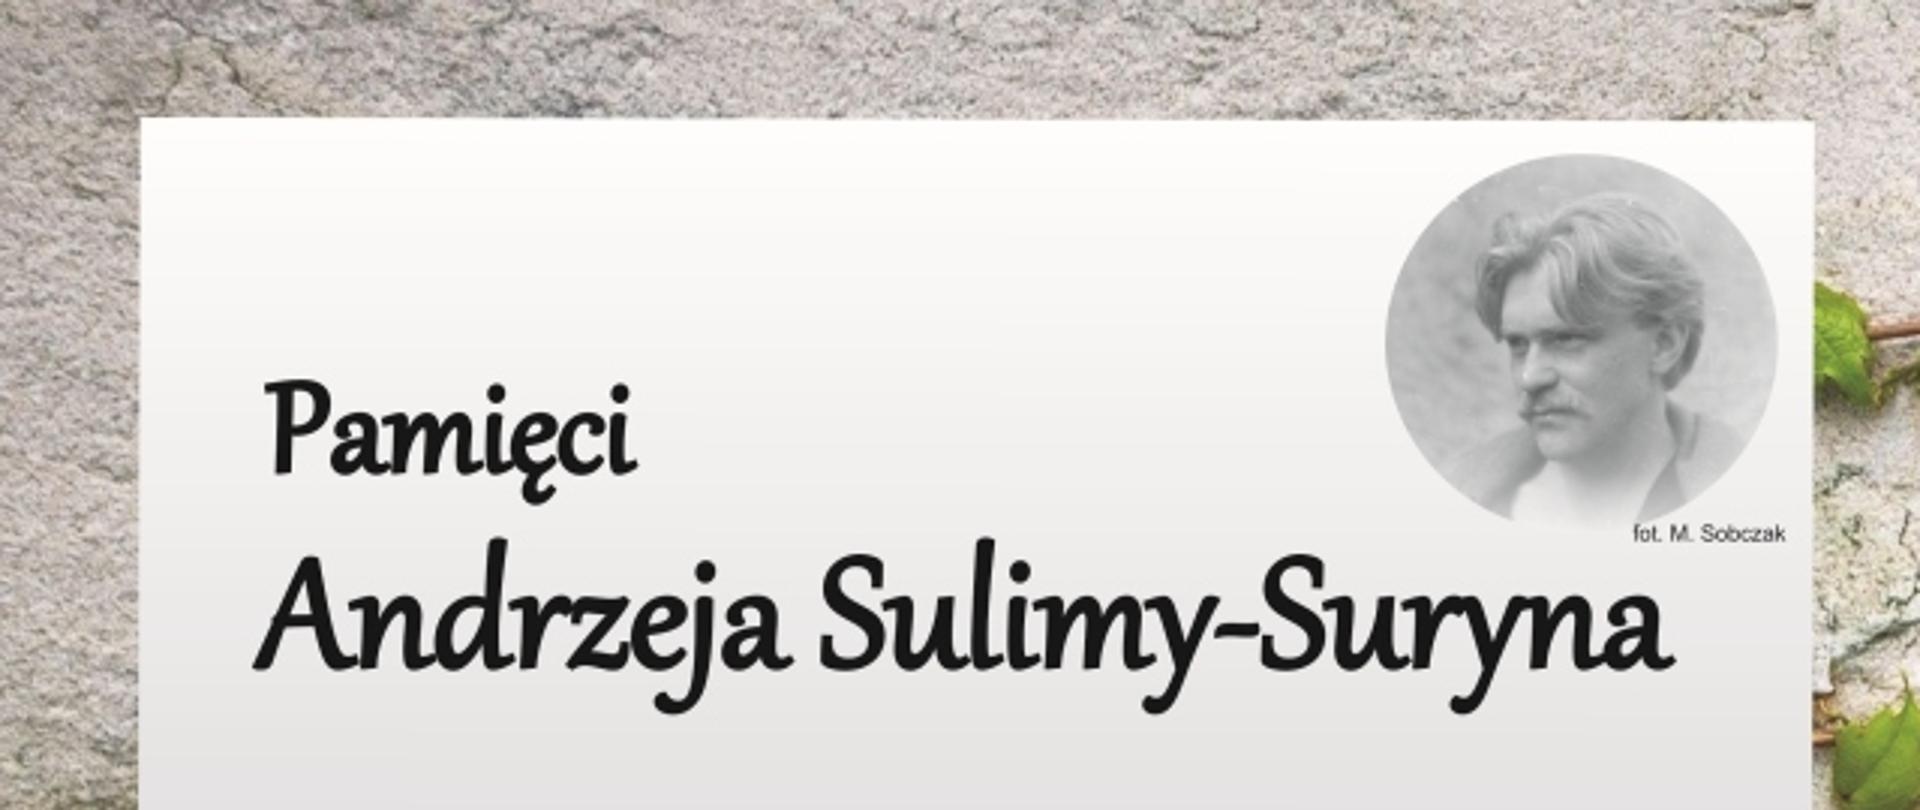 Pamięci Andrzeja Sulimy-Suryna